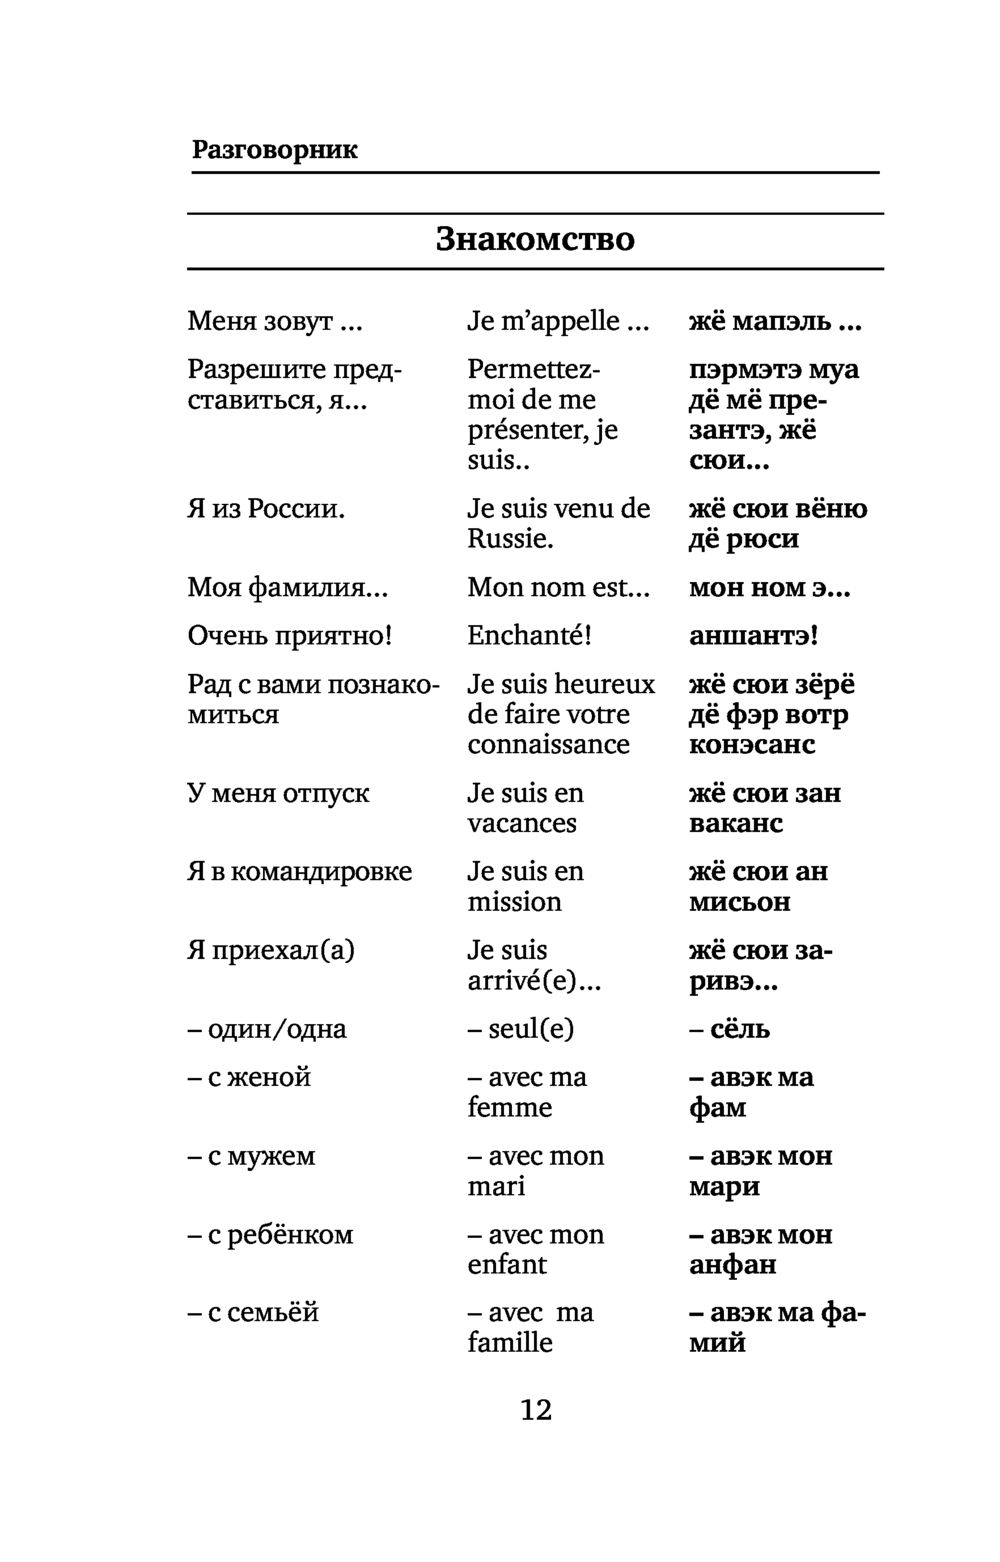 Перевод французского слова на русский язык